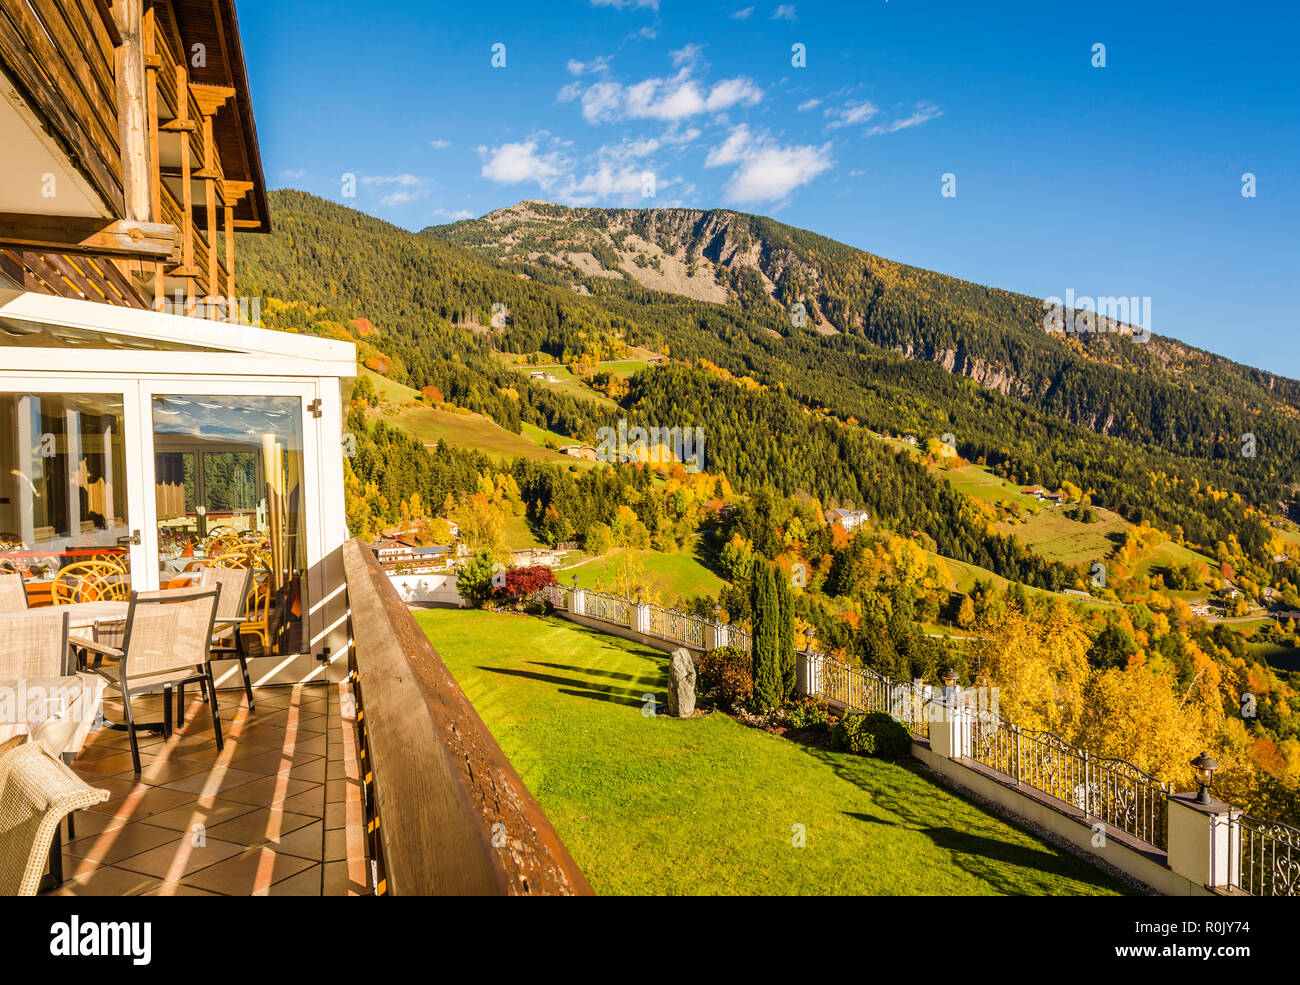 Herbst Landschaft in Gröden mit einem Bäume im Herbst Farben. Lage Nationalpark Dolomiti, Südtirol, Provinz Bozen, Italien, Europa Stockfoto